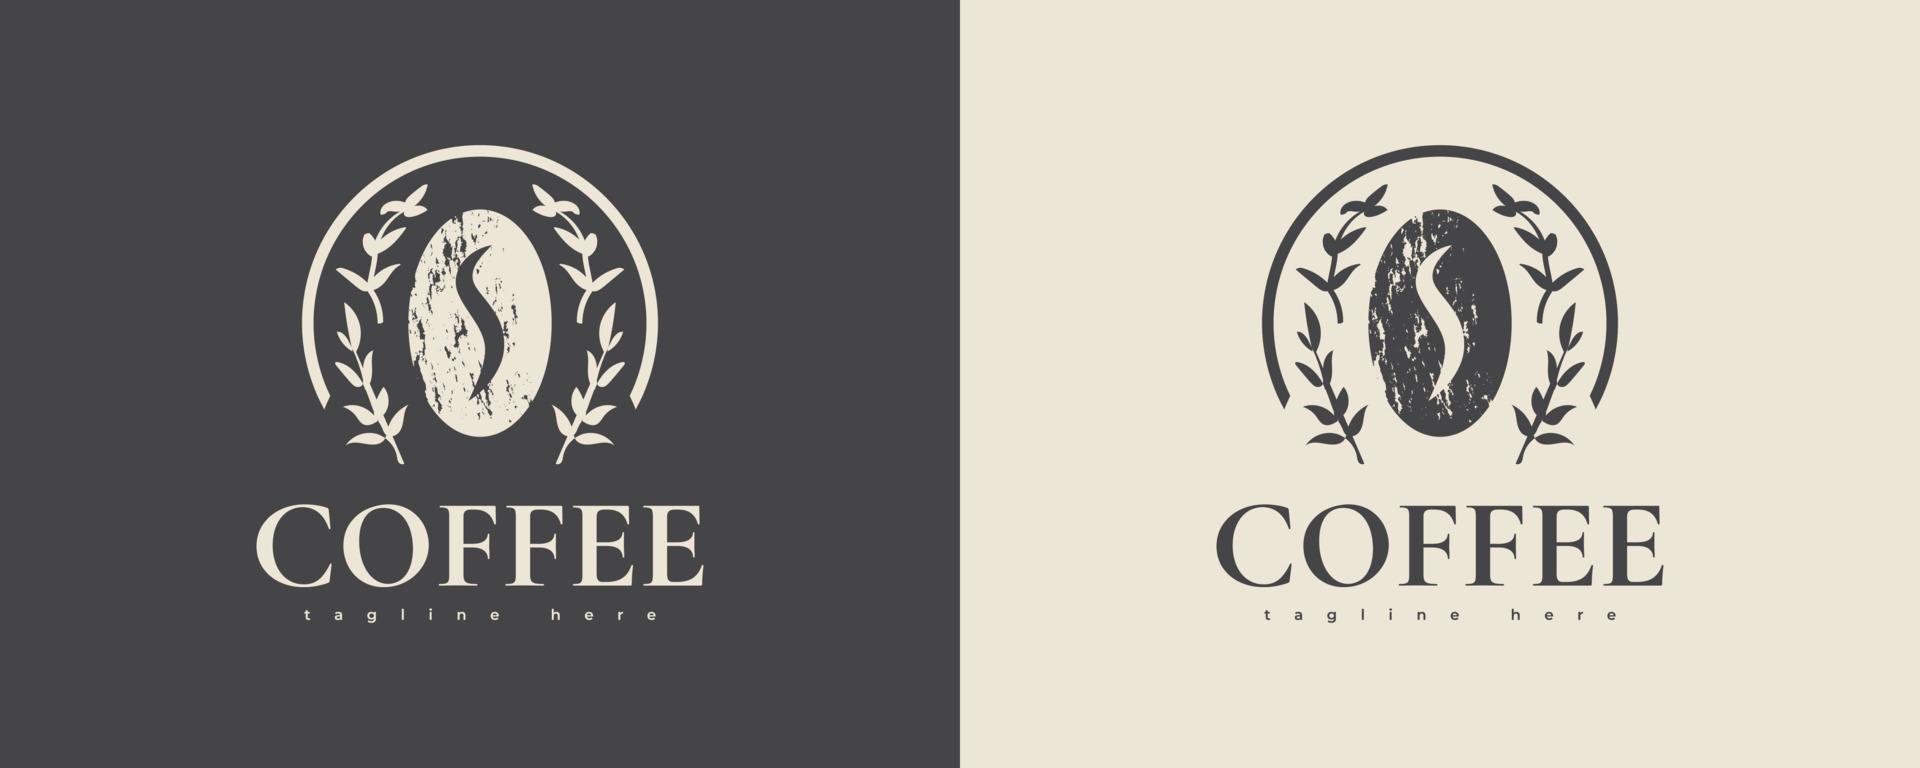 vintage en minimaal coffeeshop-logo. café-logo of embleem met retro-stijl vector